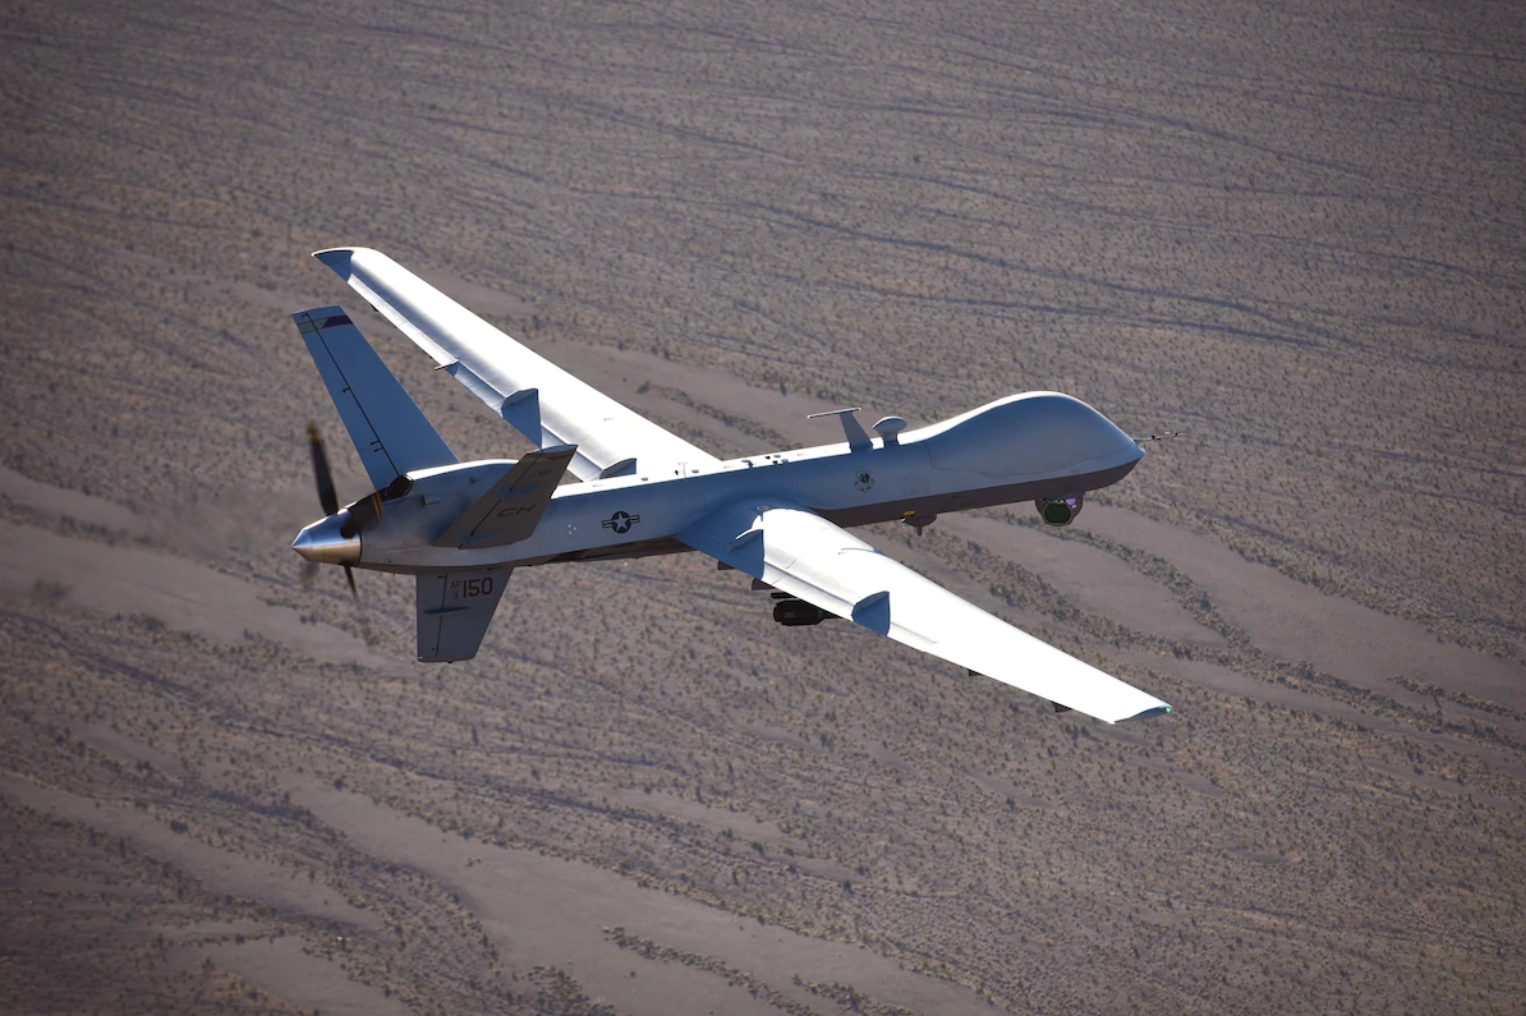 El peso del dron ‘MQ-9 Reaper’ es de 4.900 libras o 2.223 kilogramos vacío.